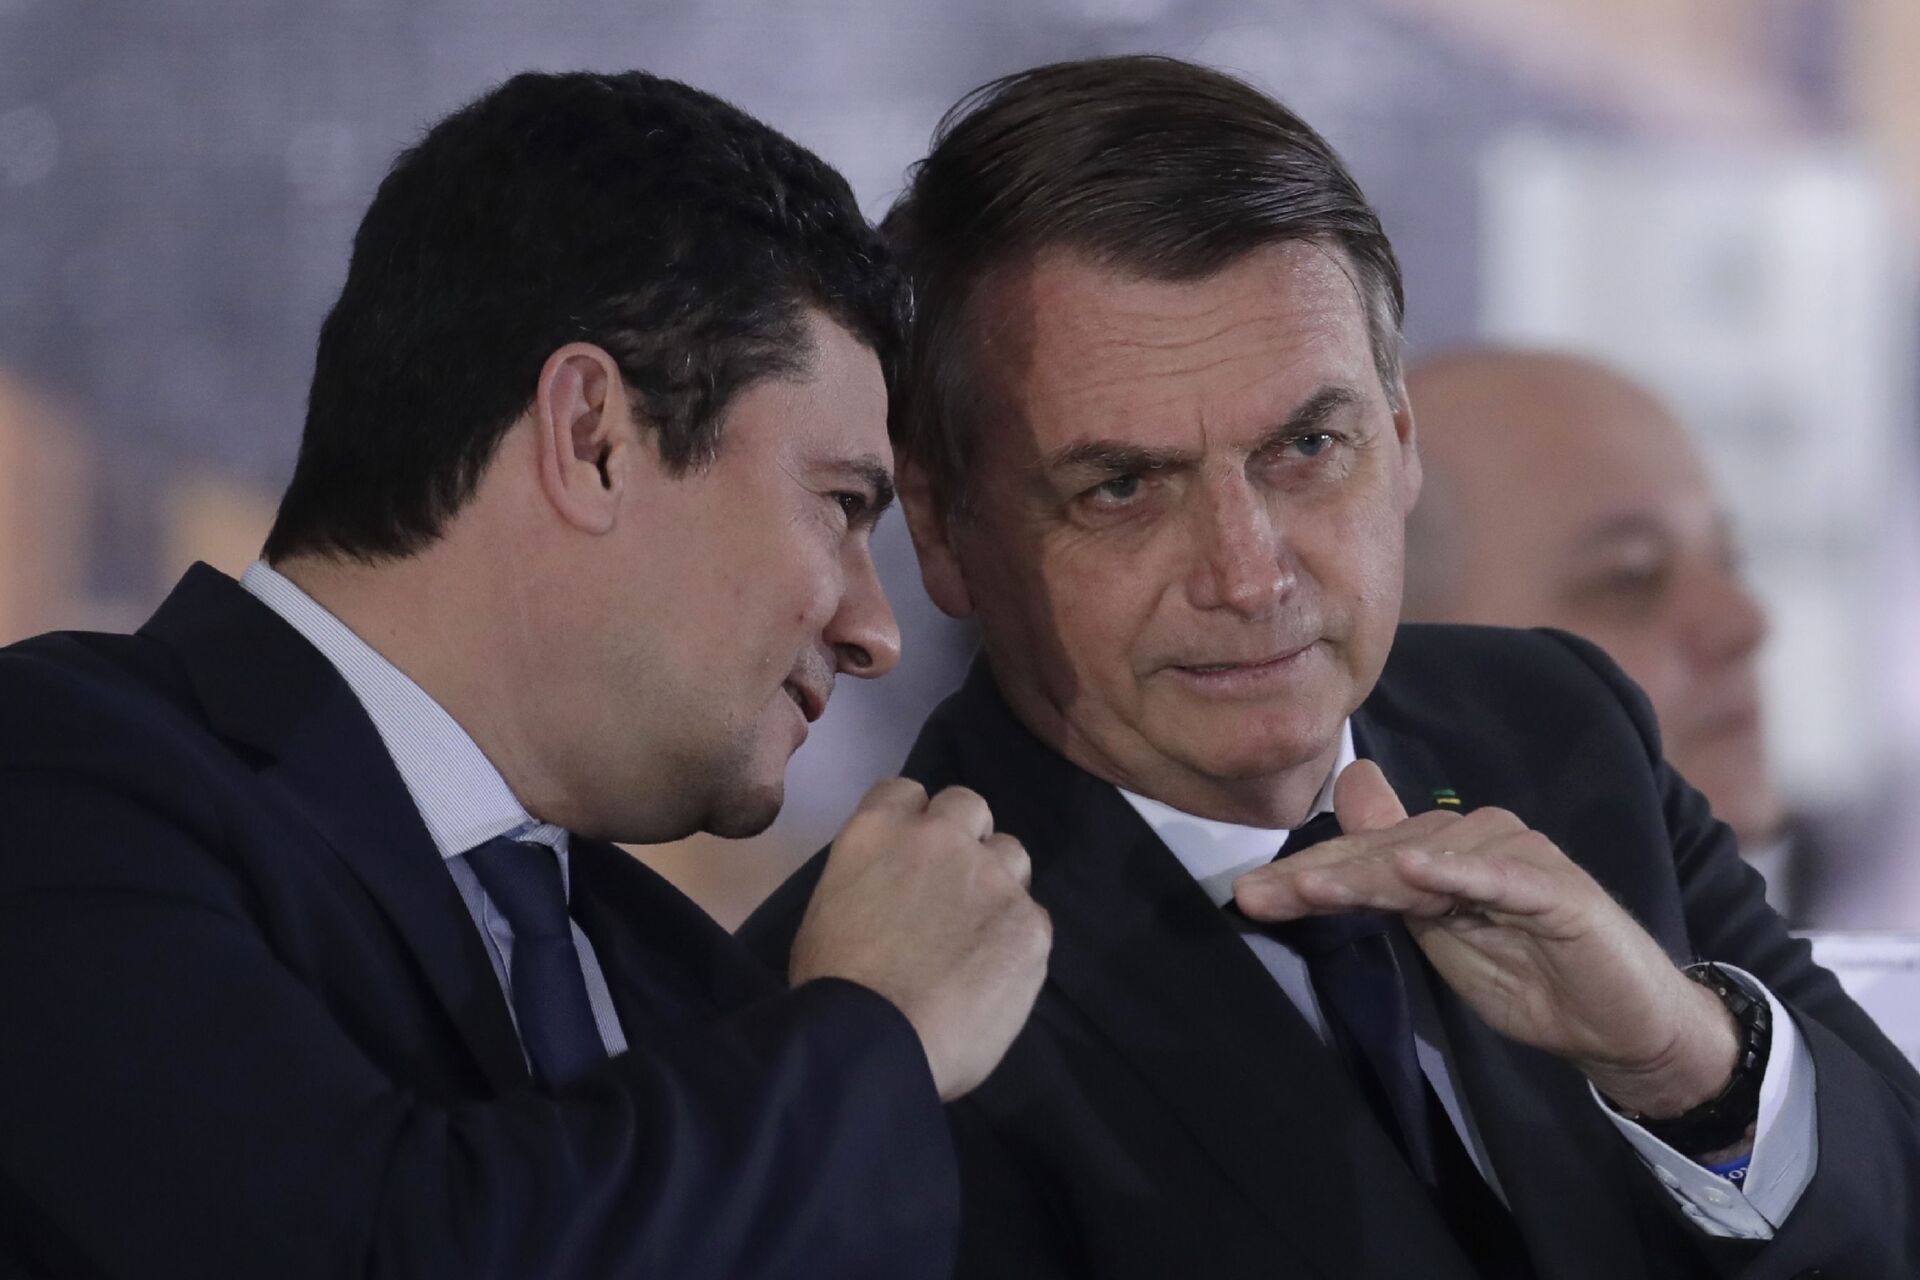 O então ministro da Justiça, Sergio Moro, e o presidente Jair Bolsonaro durante evento em Brasília em 9 de agosto de 2019, quando ainda tinham bom relacionamento e forte aliança - Sputnik Brasil, 1920, 09.11.2021